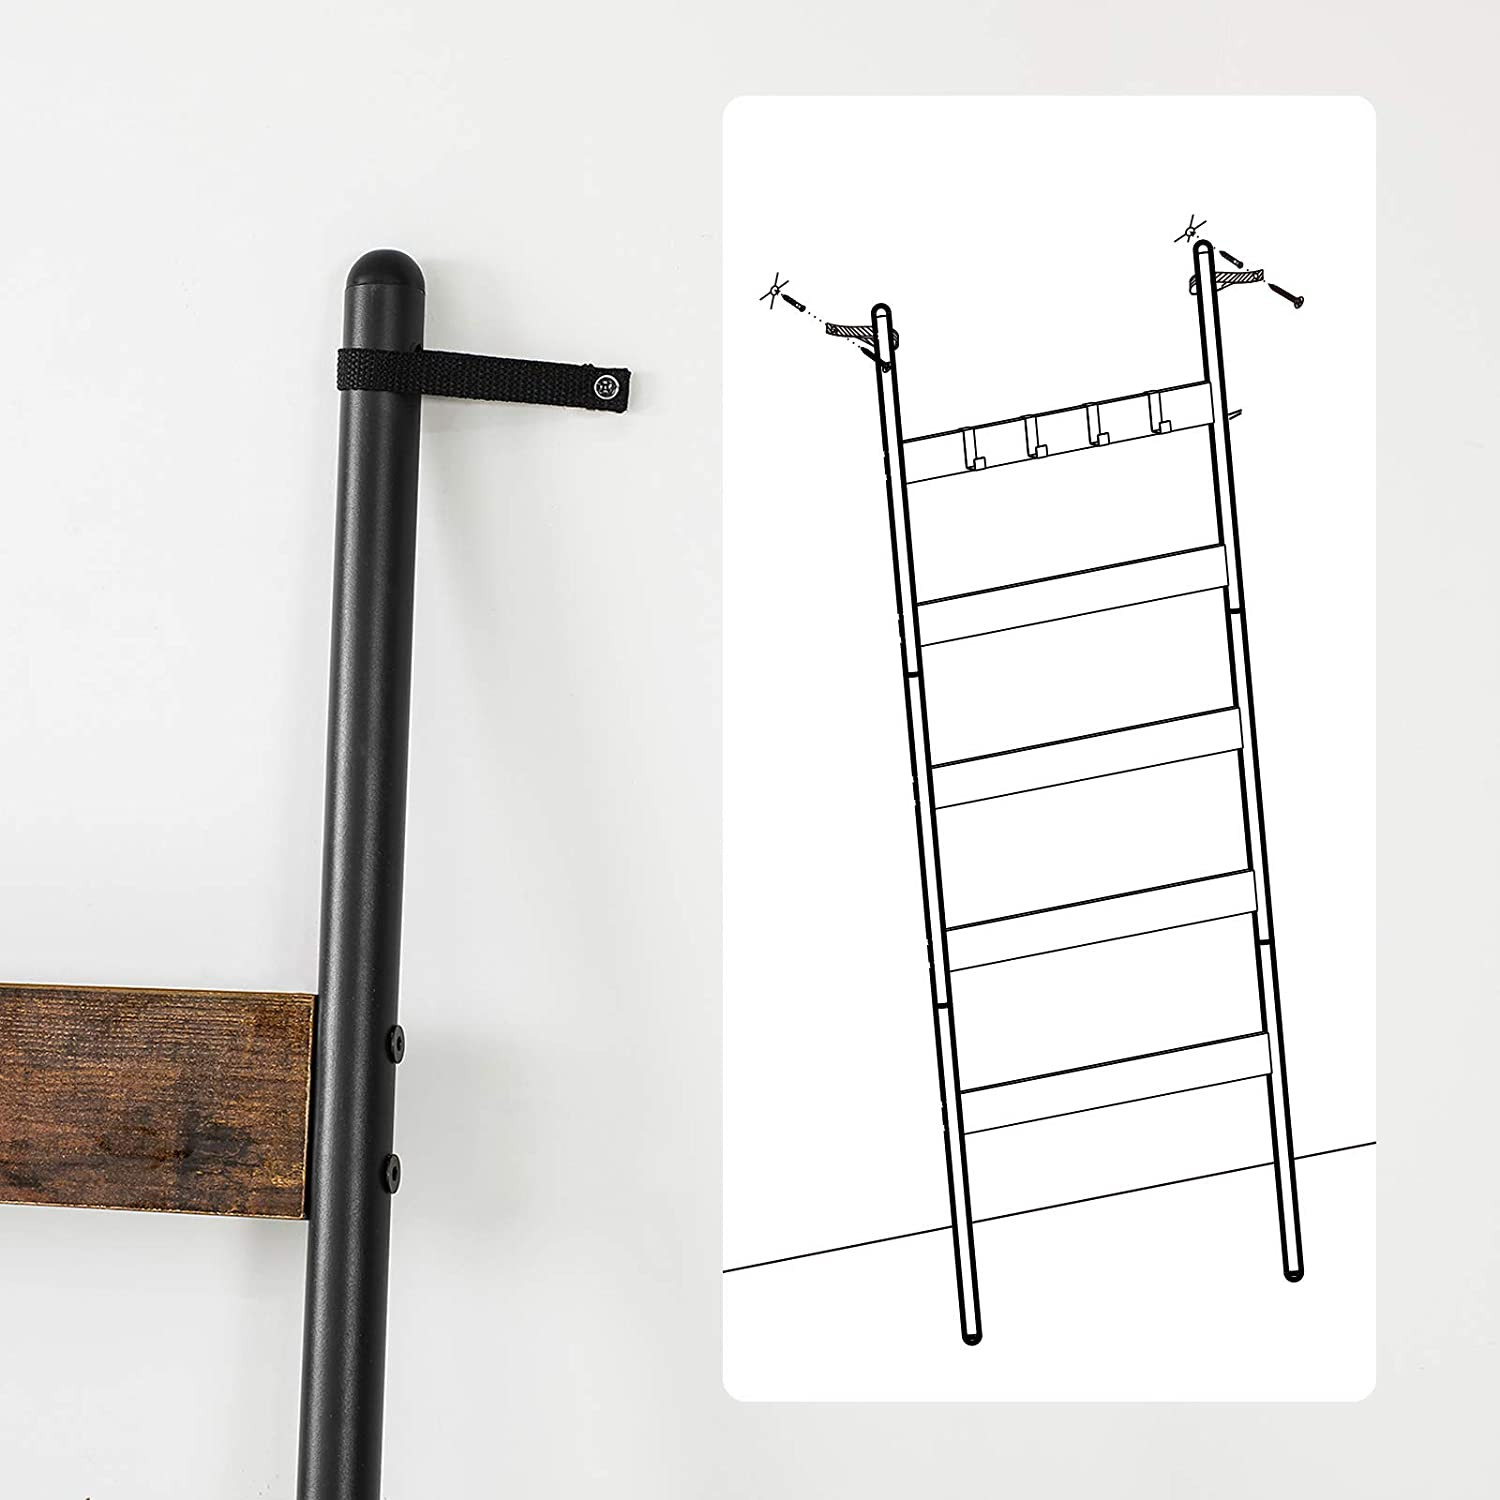 5-úrovňový rebríkový stojan na uteráky LLS011B01